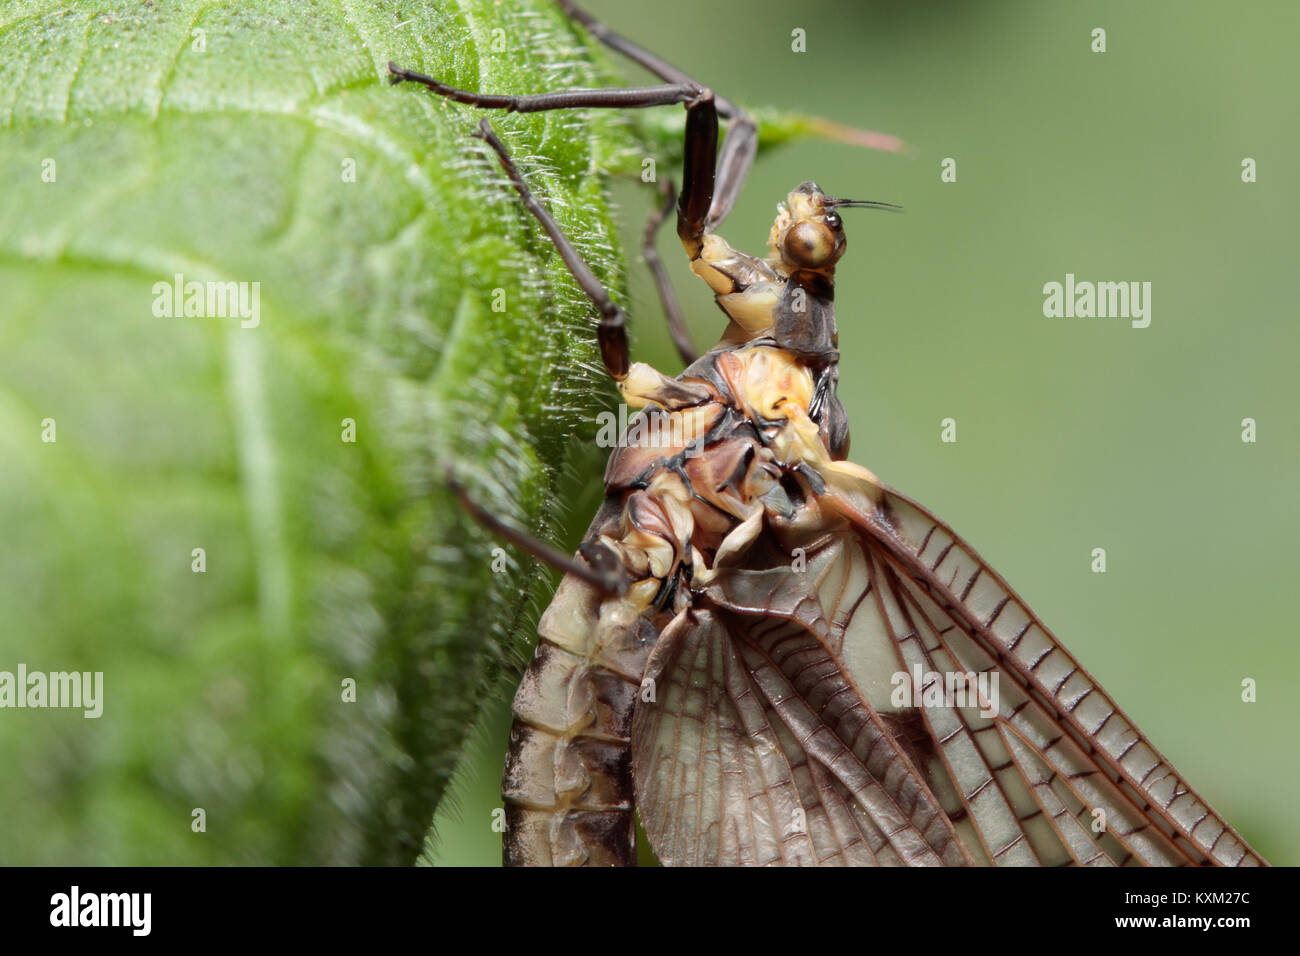 Mayfly (Ephemera sp.) on nettle. Surrey, UK. Stock Photo